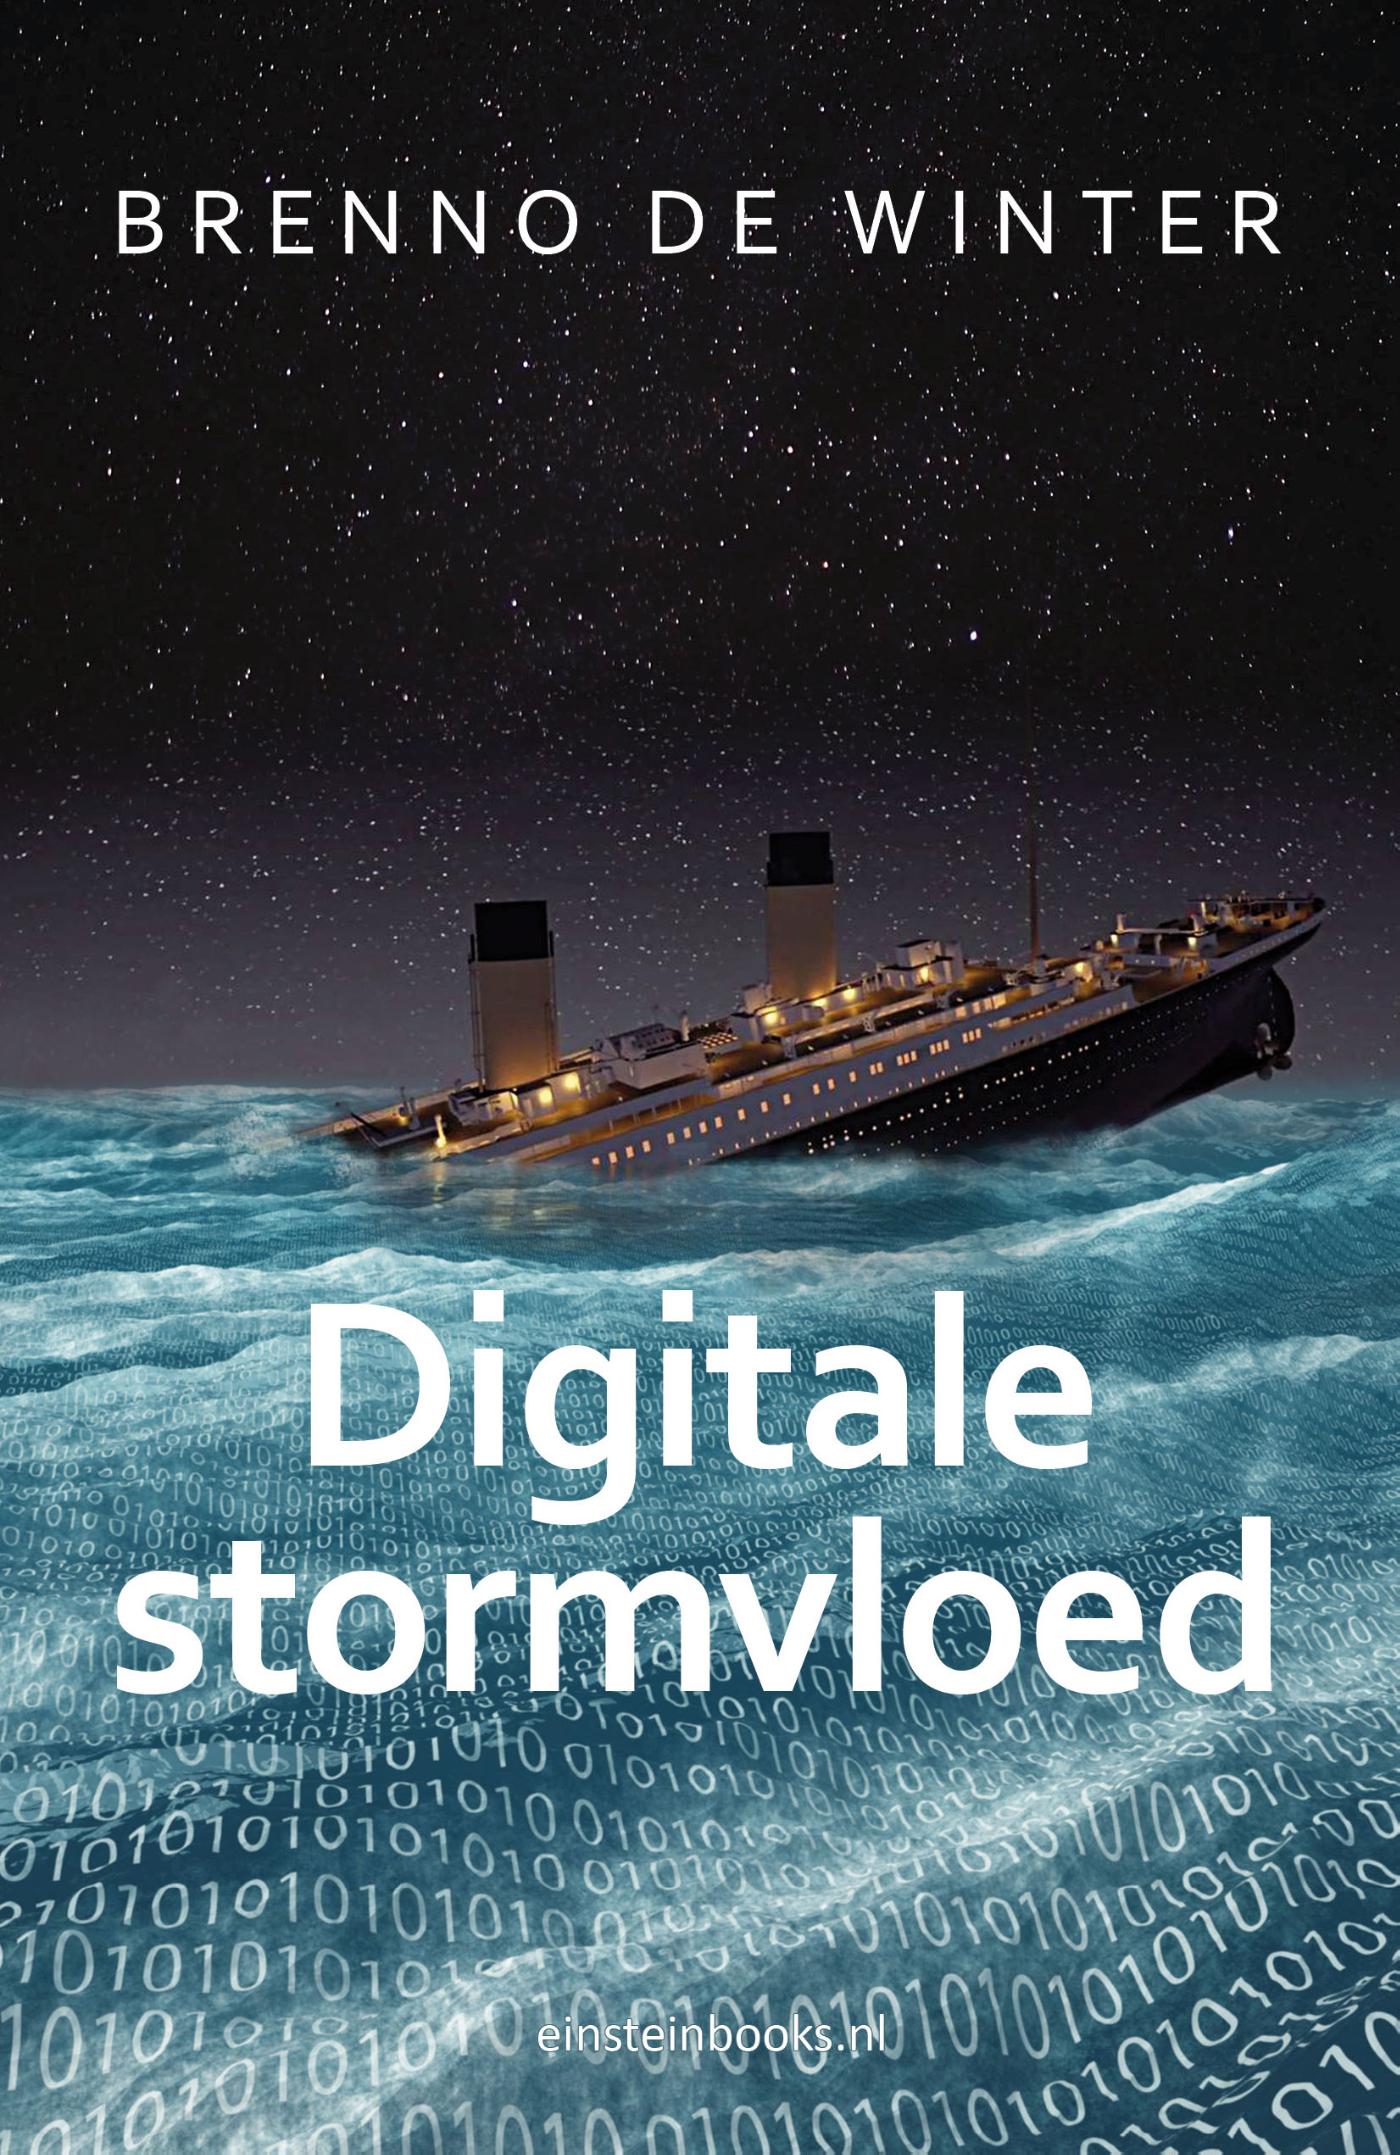 Digitale stormvloed (Ebook)